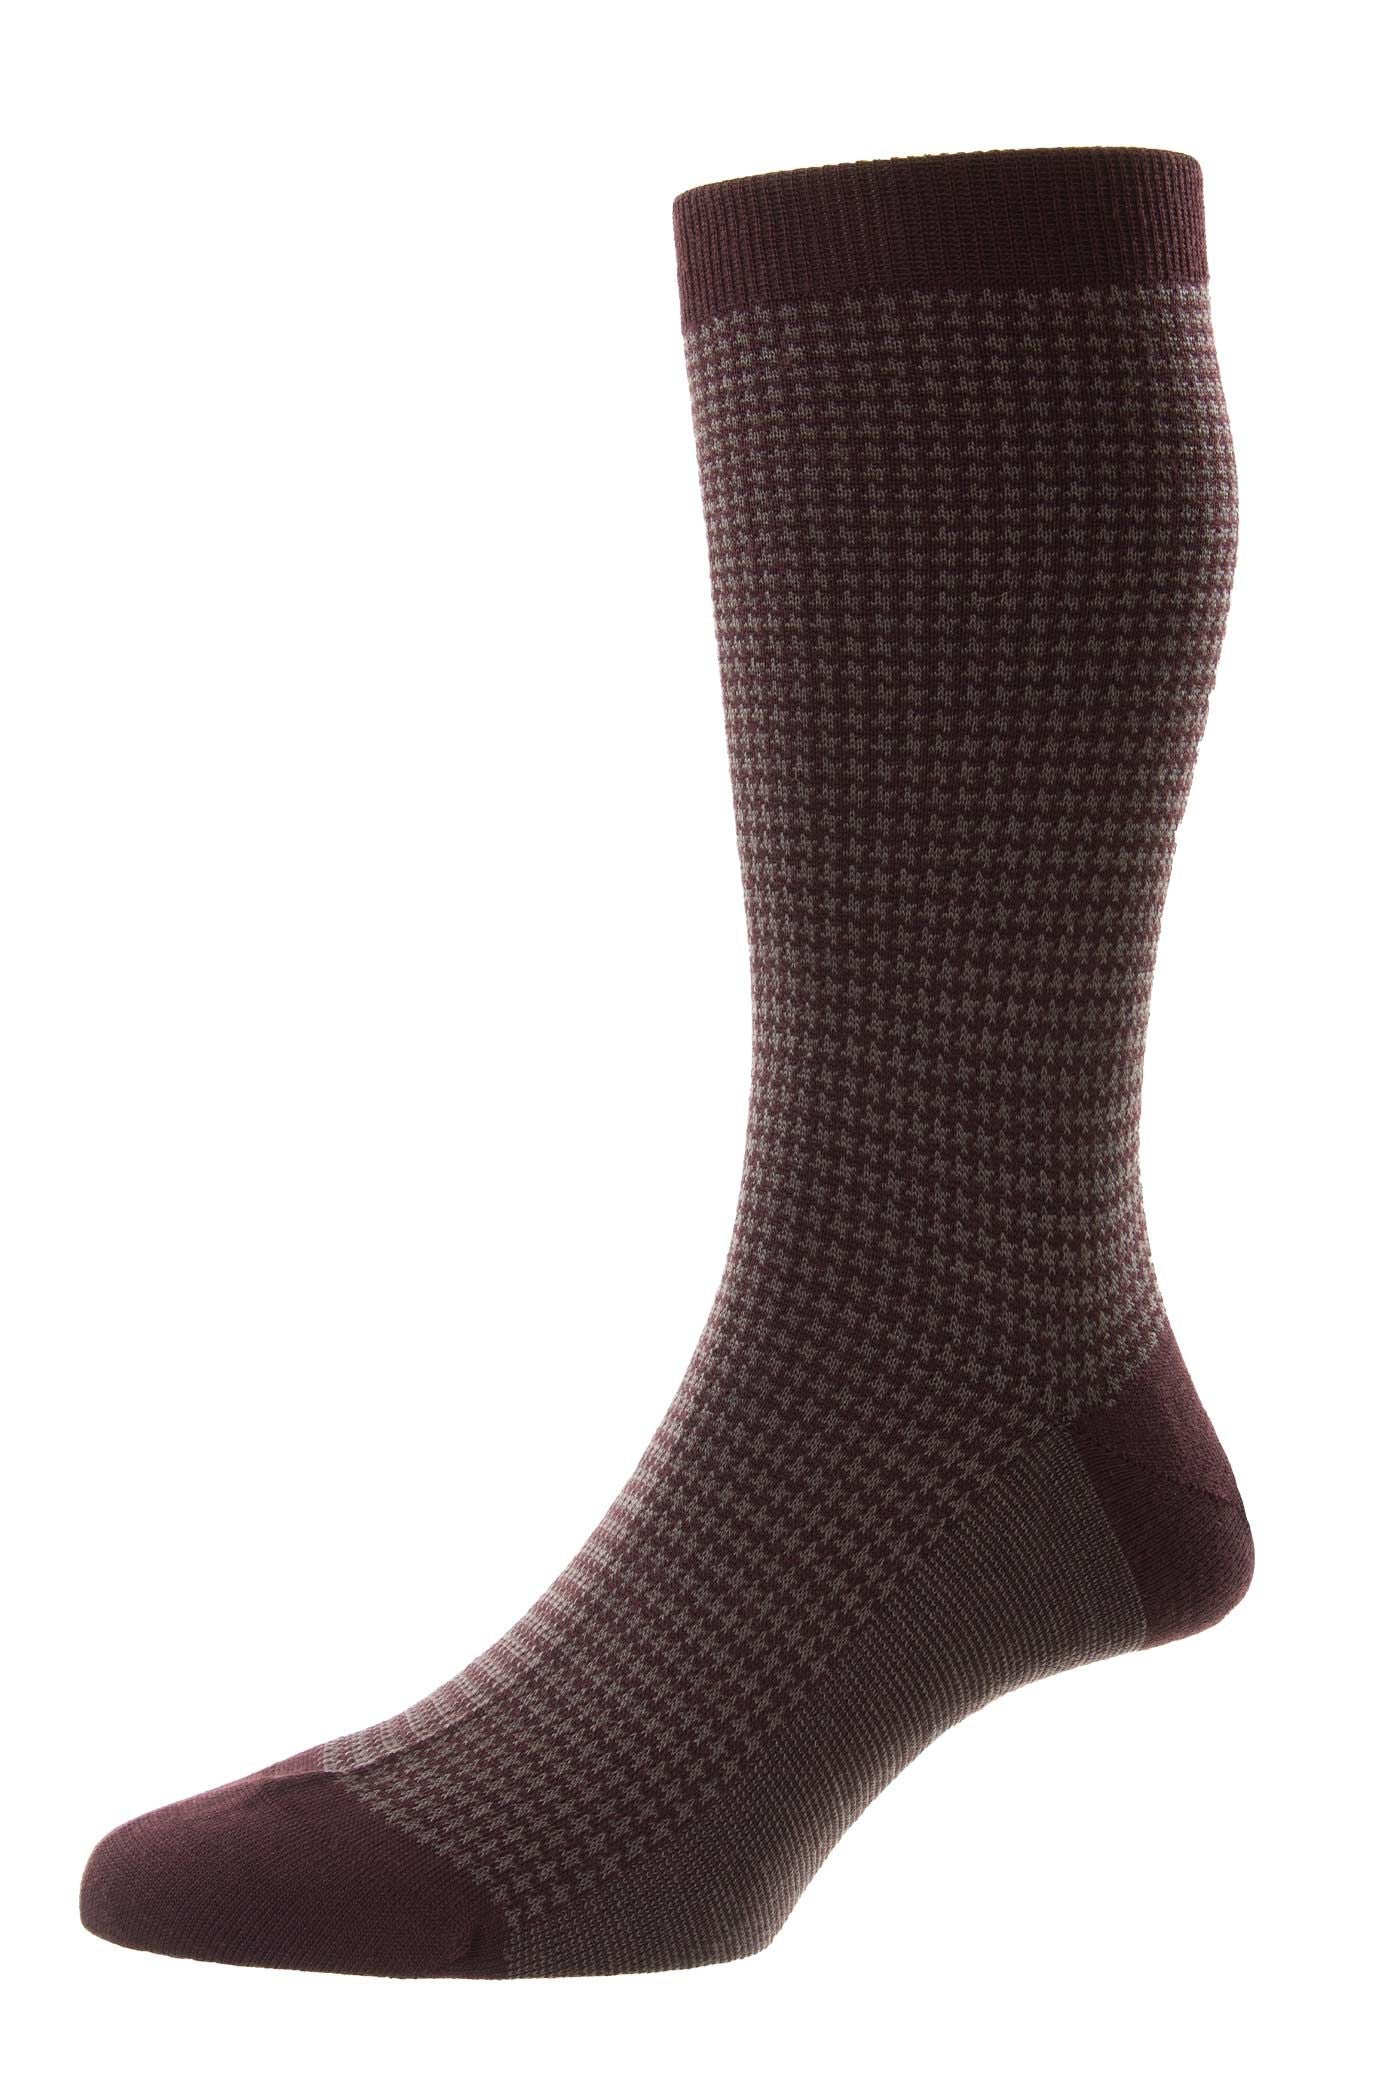 Highbury Houndstooth Merino Wool Socks